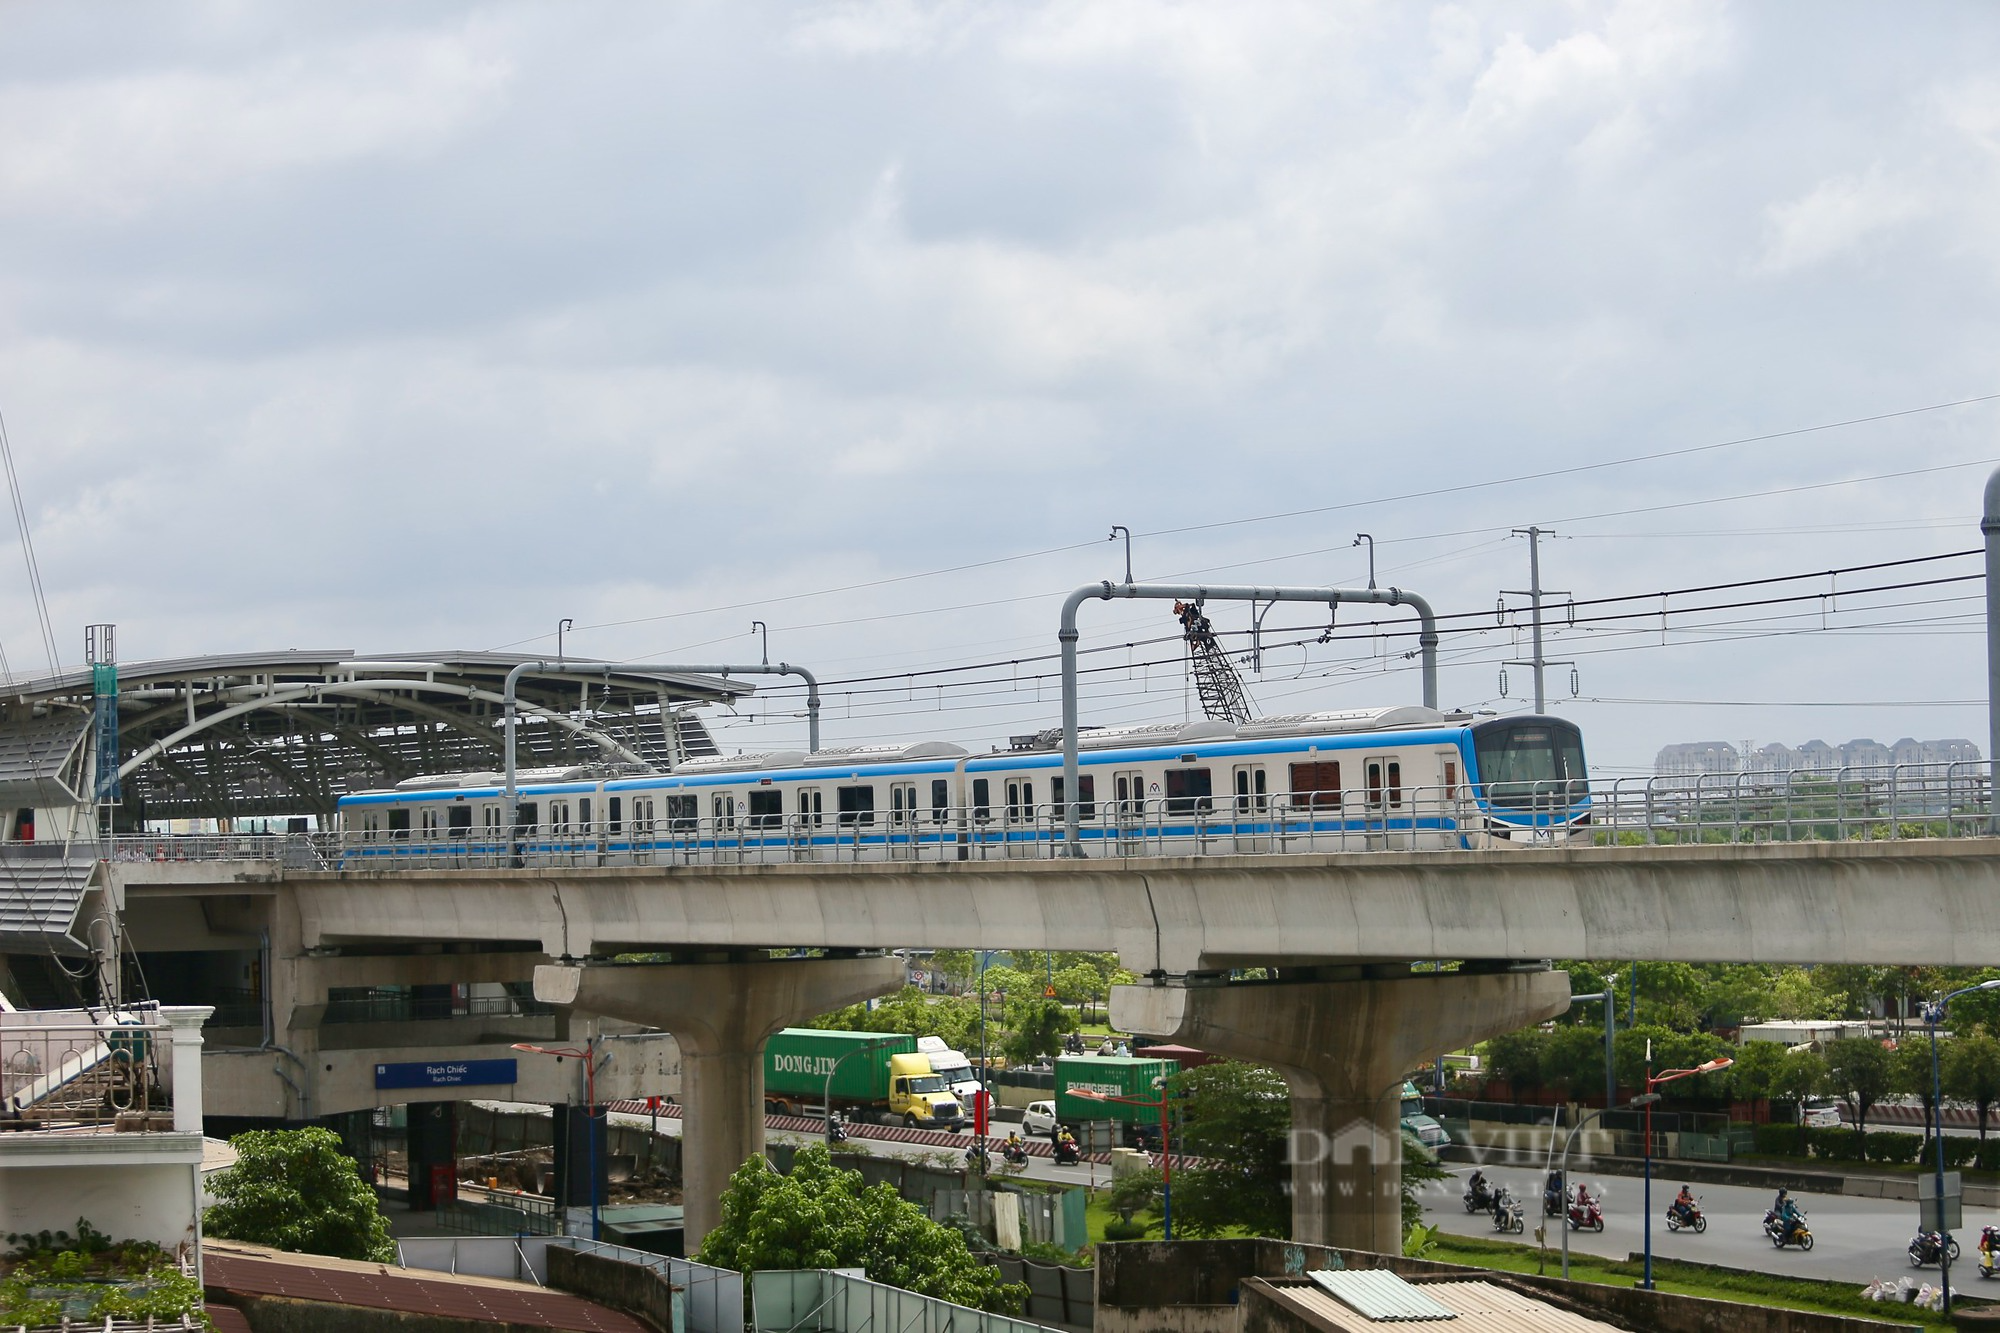 Chiêm ngưỡng đoàn tàu Metro Bến Thành - Suối Tiên chạy thử nghiệm toàn tuyến - Ảnh 14.